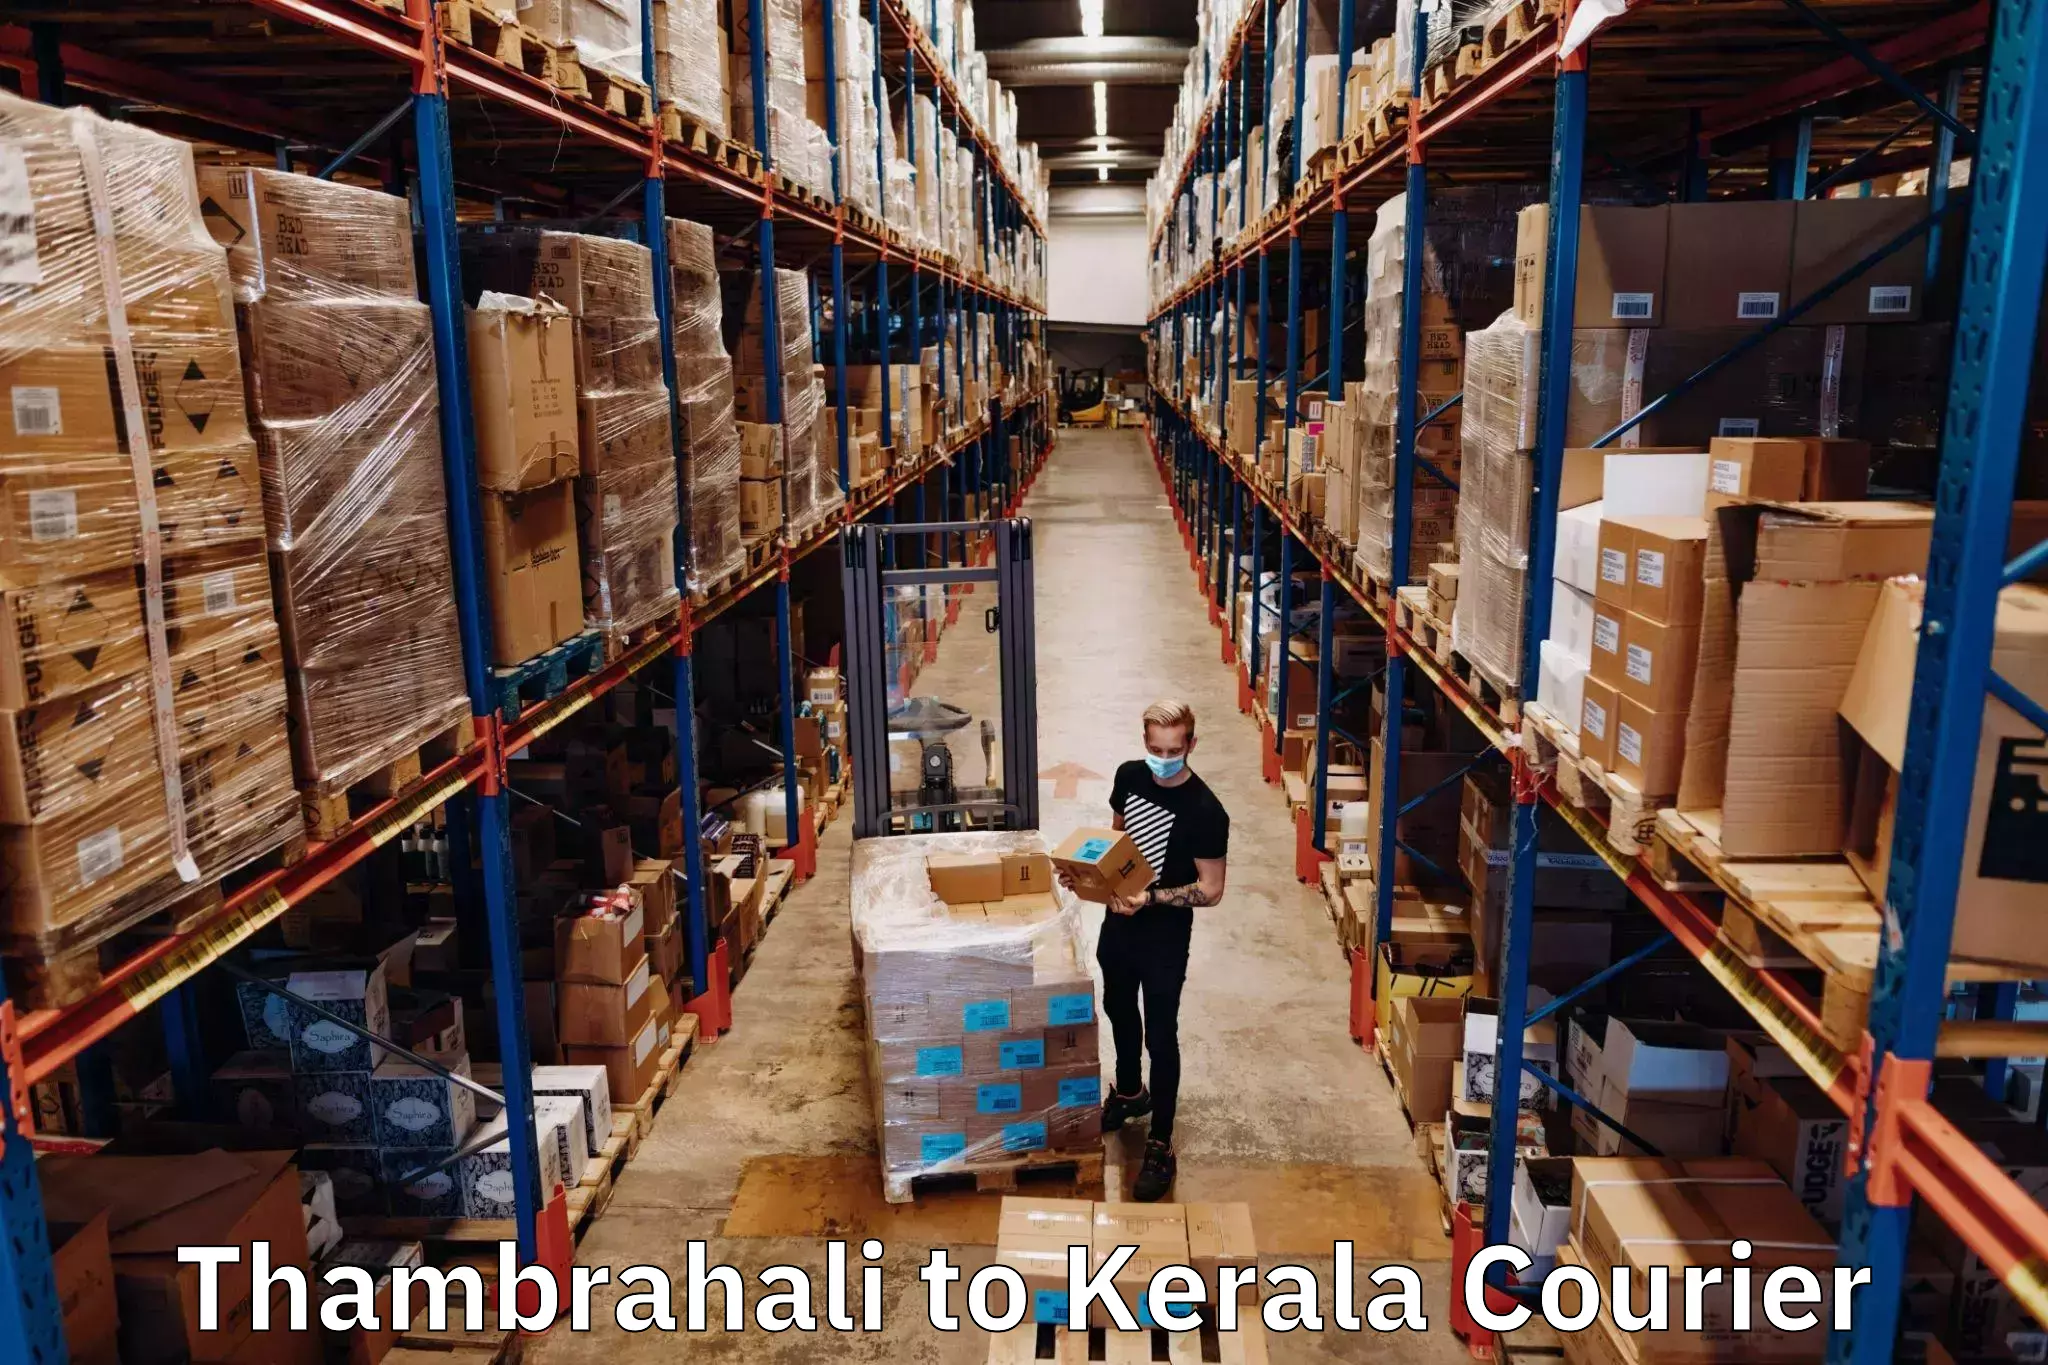 Customer-centric shipping Thambrahali to Pala